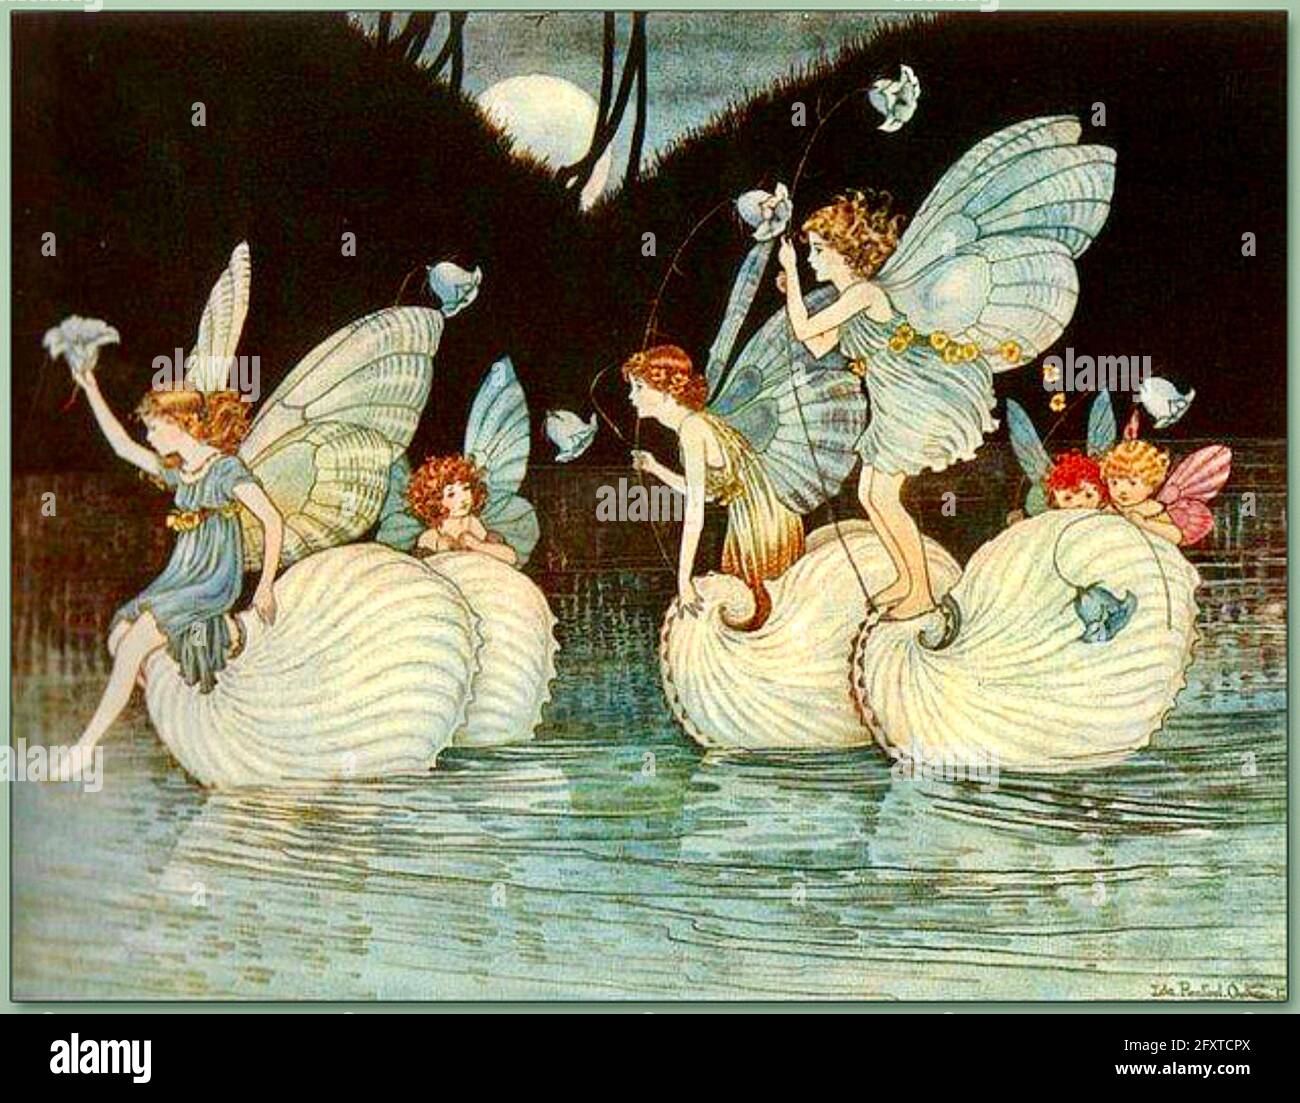 IDA Rentoul Outhwaite - Fairy Islands dans le livre Elves and Fairies - 1916 Banque D'Images